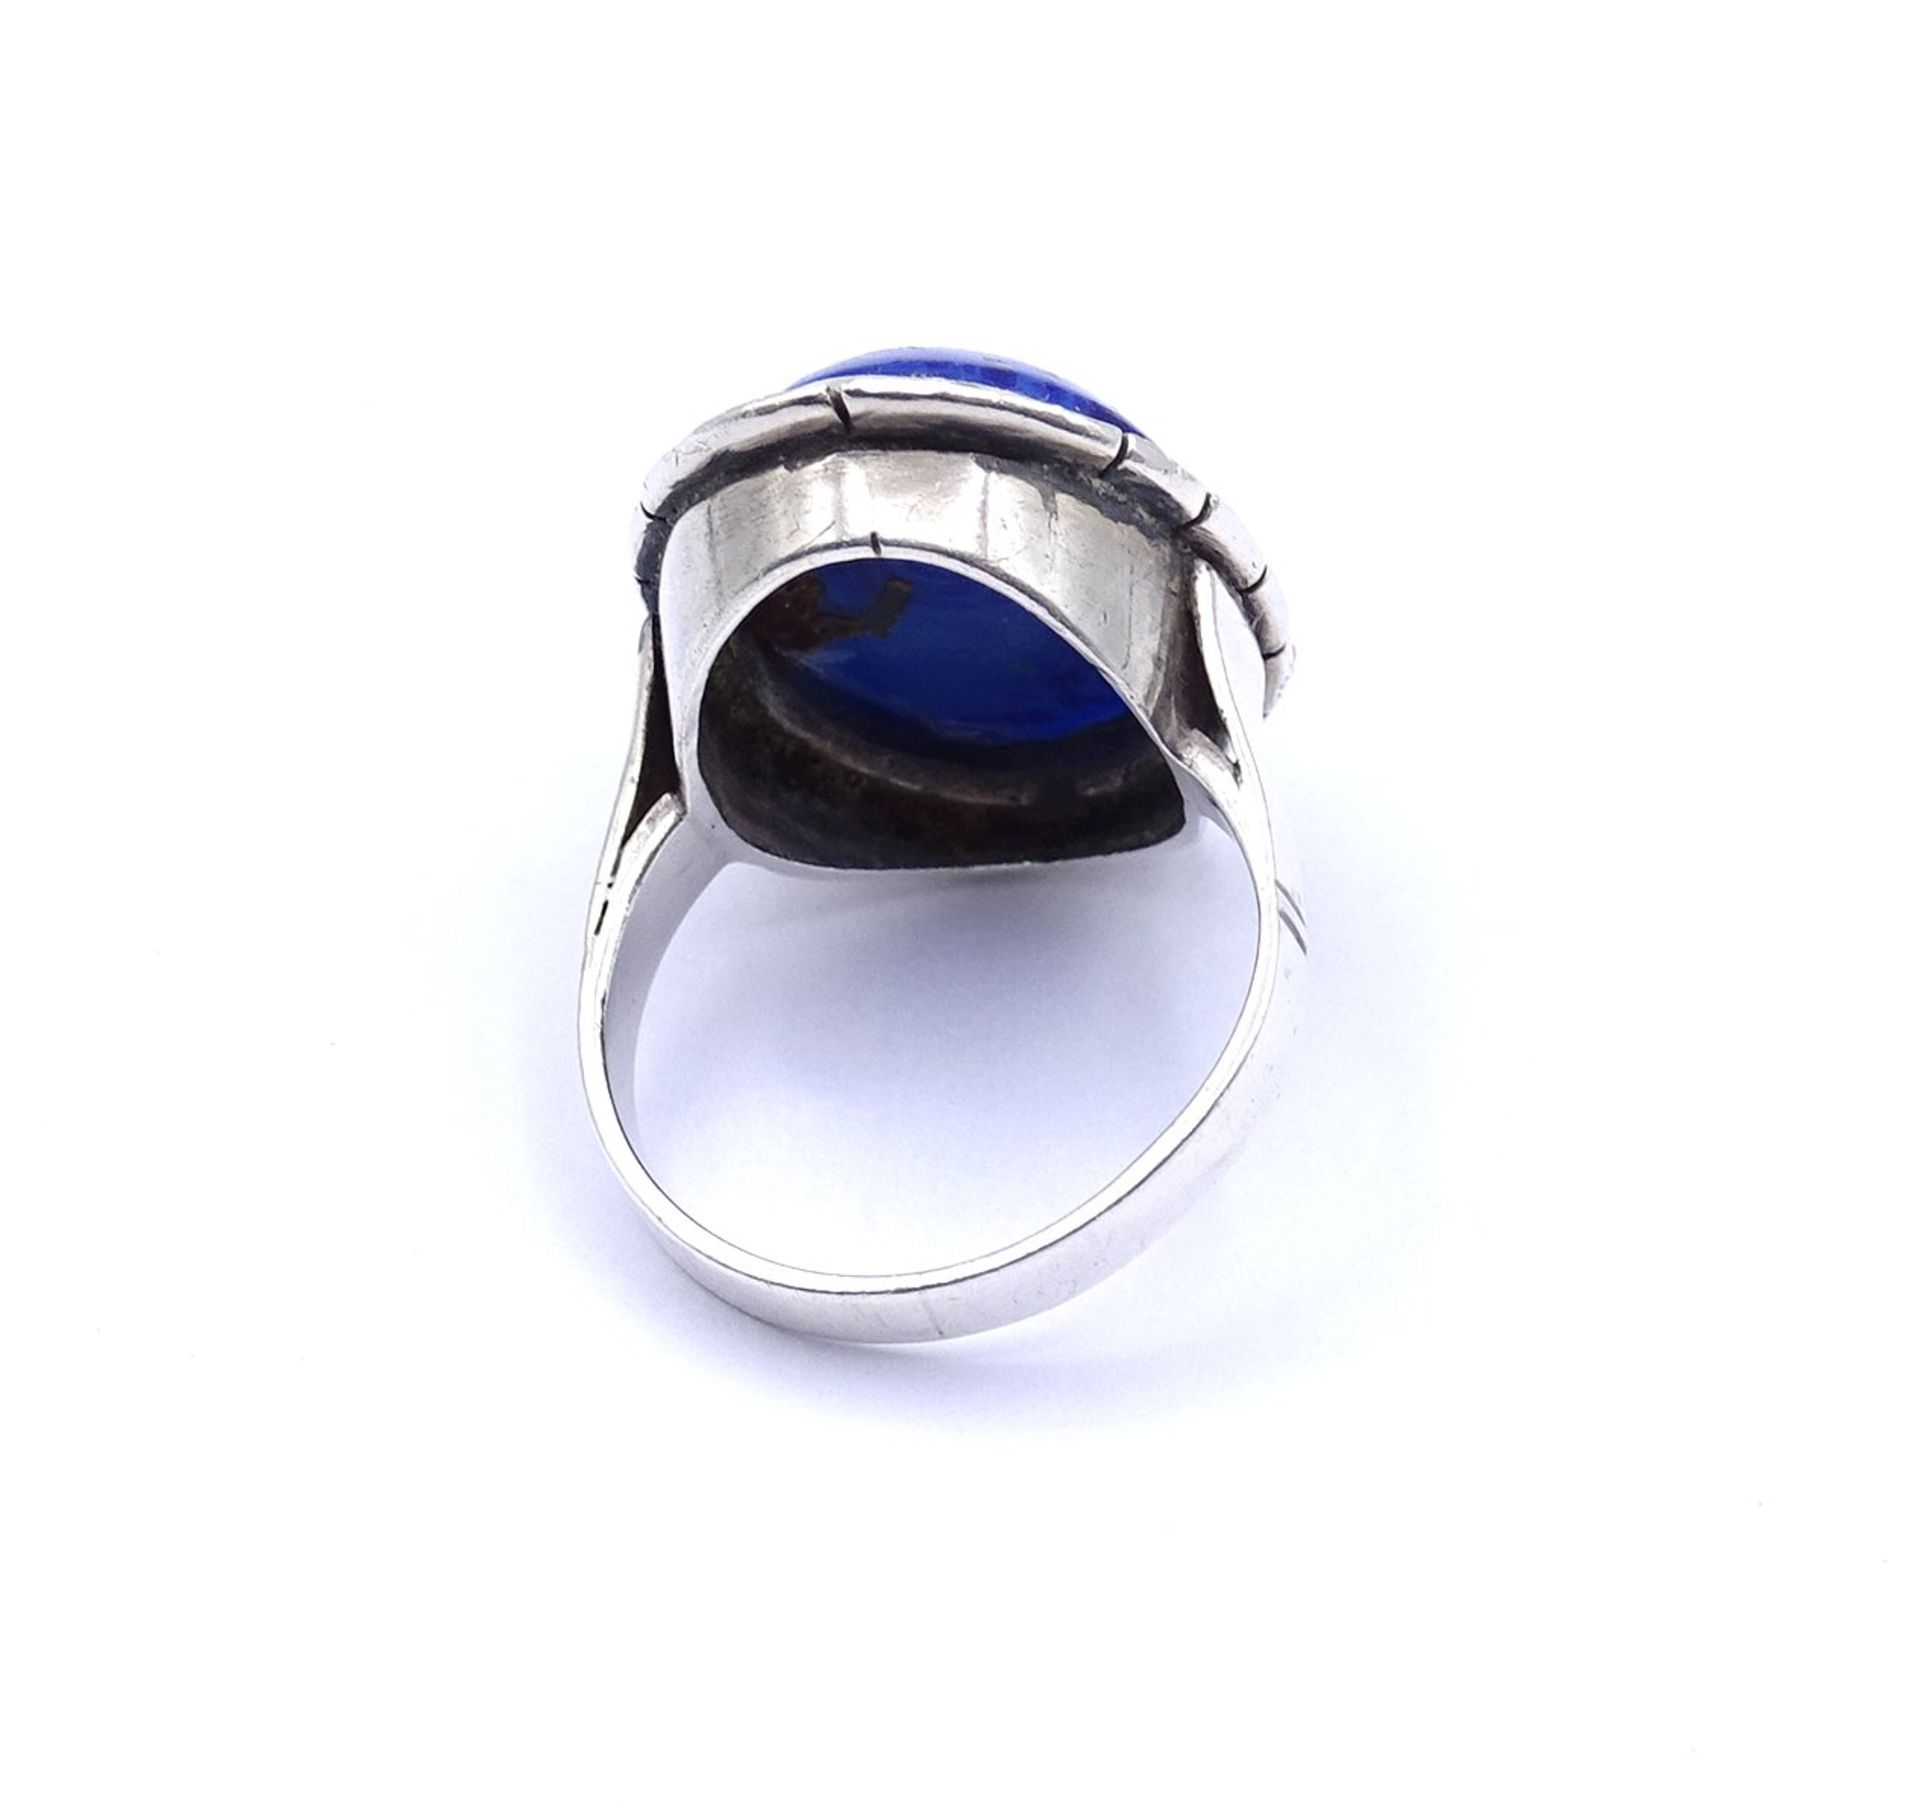 800er Silber Ring mit einem blauen Cabochon und Markasiten, 1x Markasit fehlt, 7,4g., RG 54 - Image 3 of 3